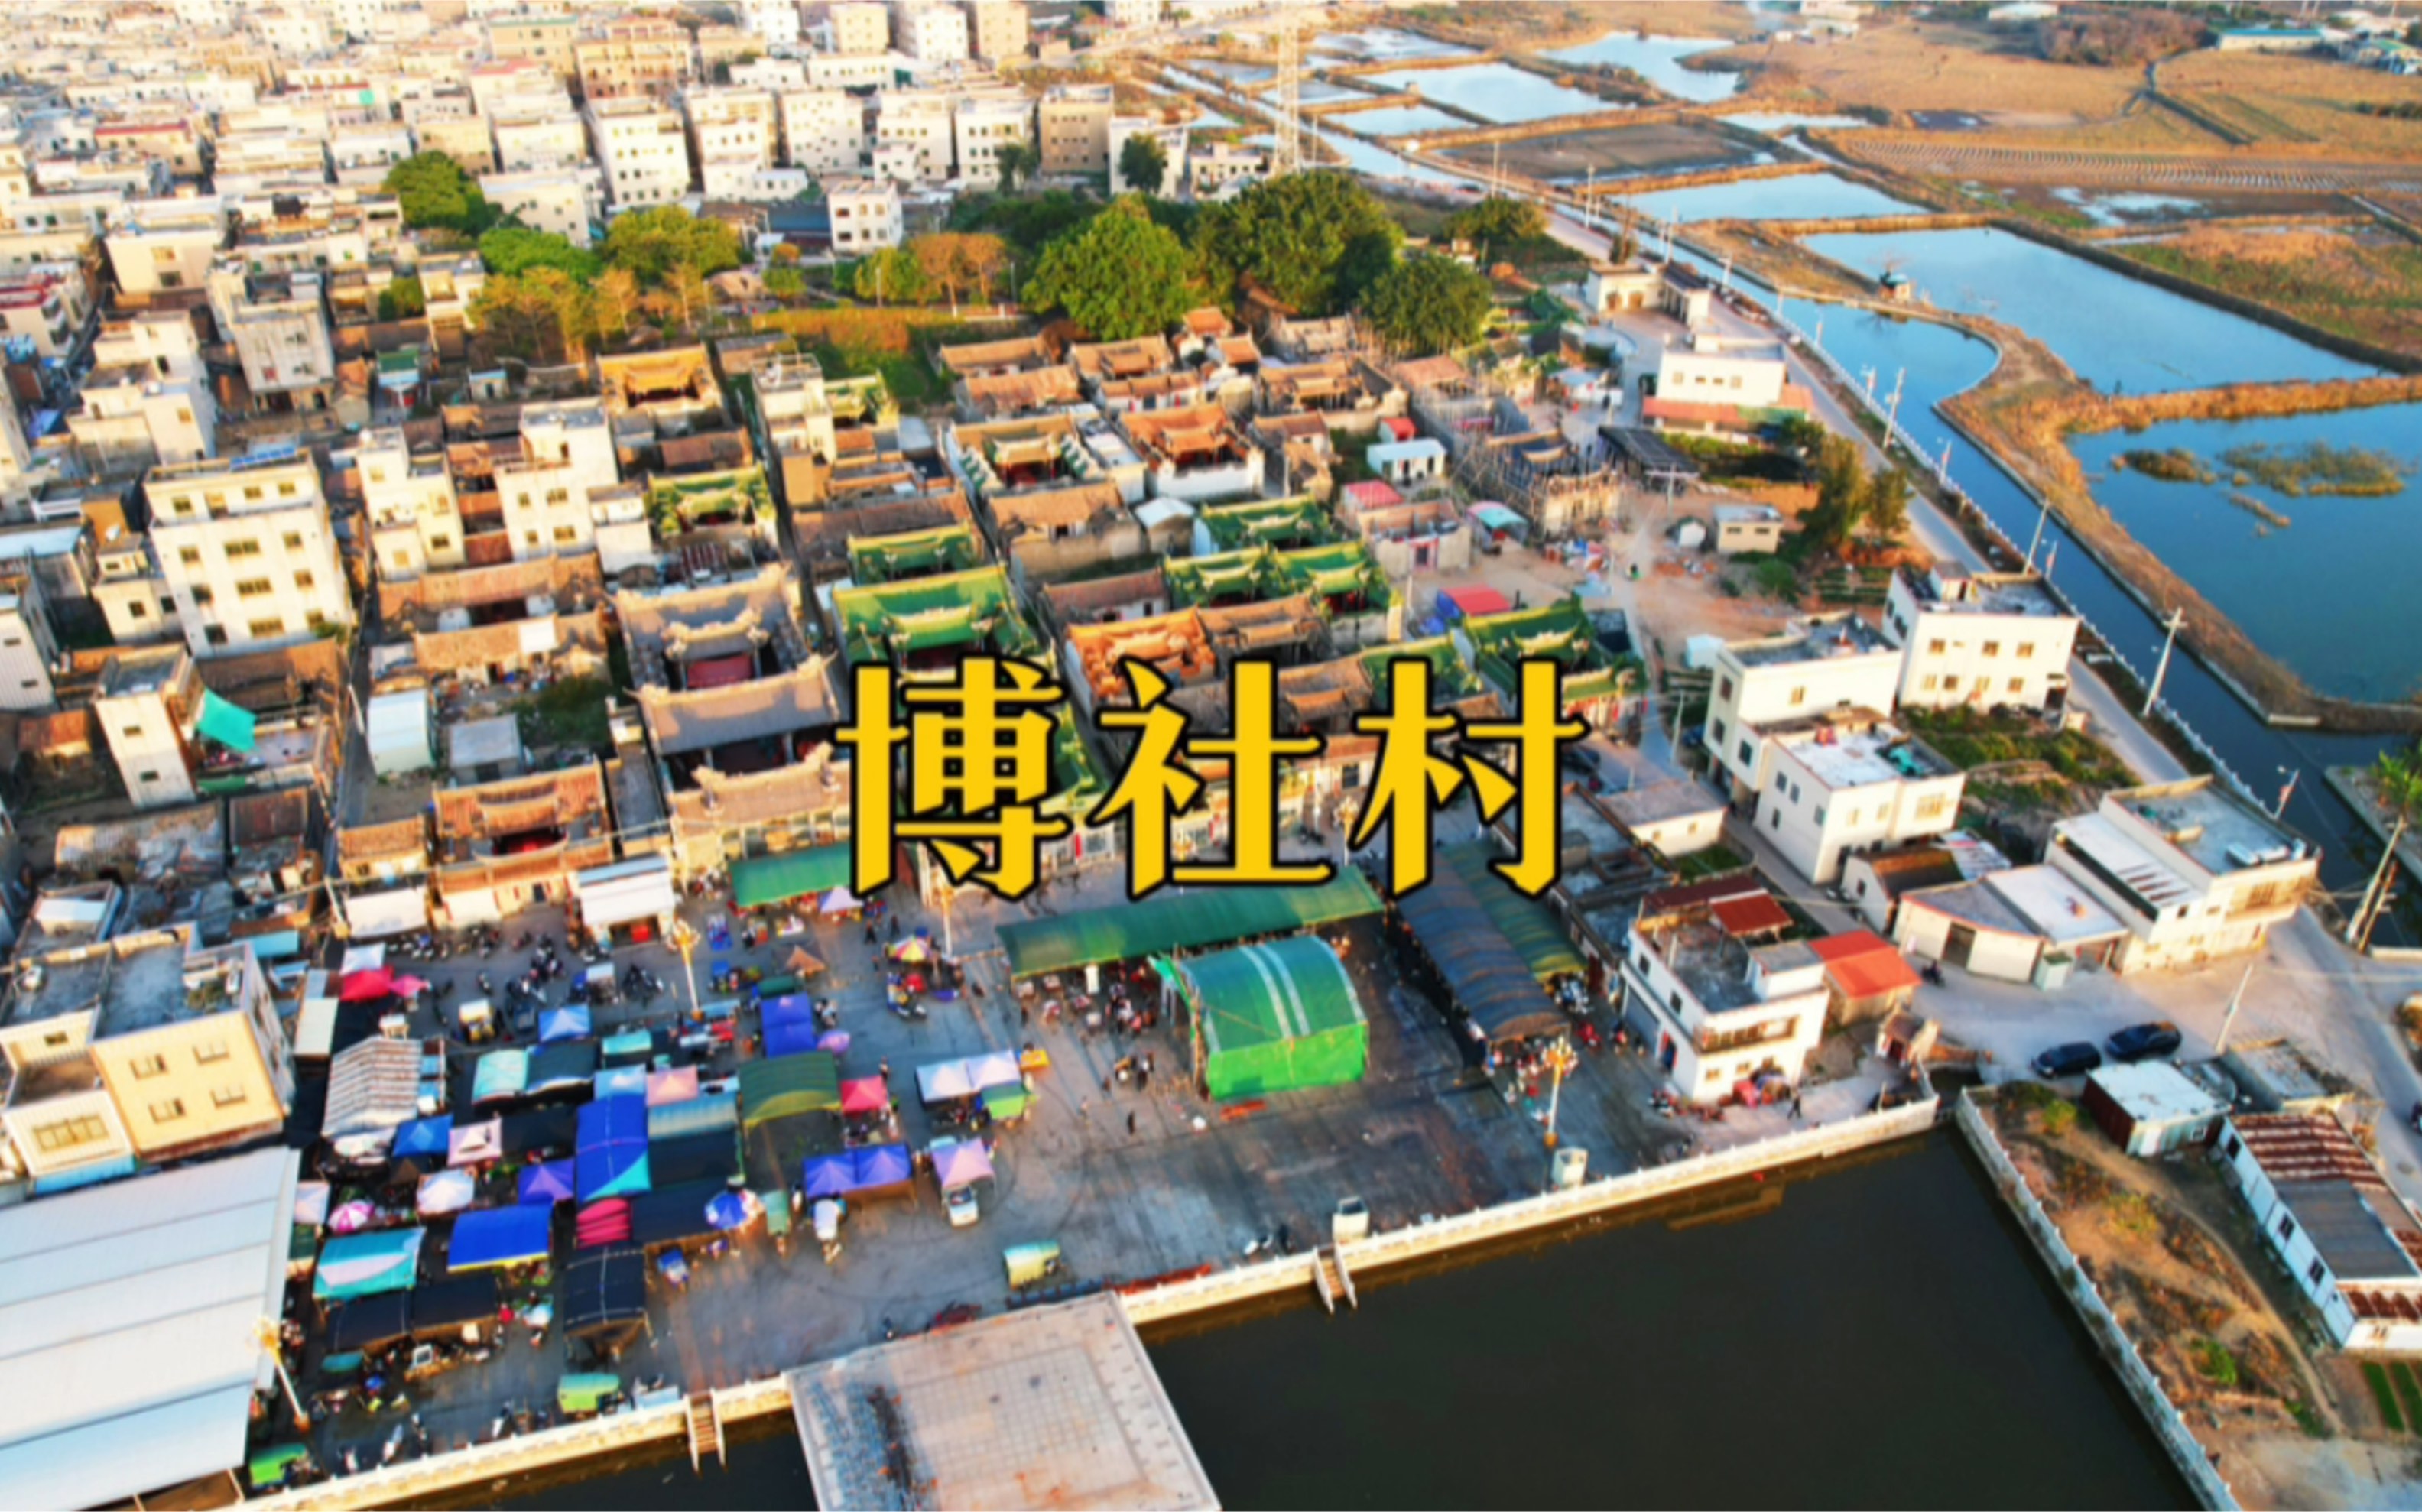 博社村,位于广东陆丰市,电视剧《破冰行动》塔寨村原型村